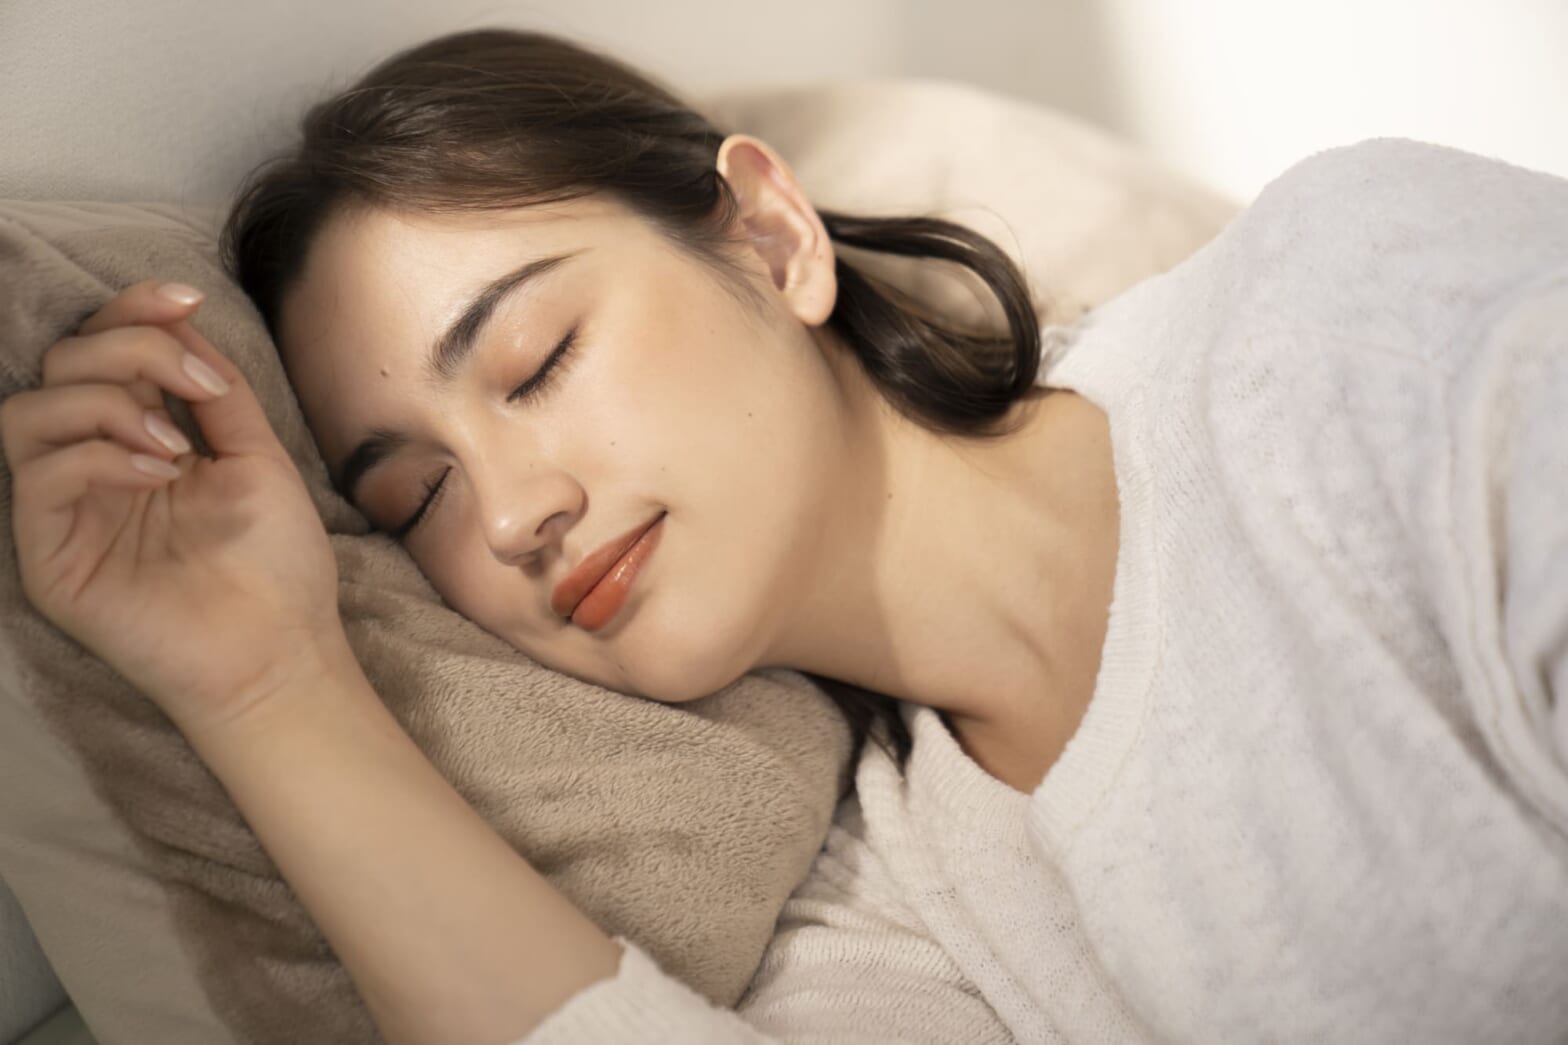 マッサージと睡眠の関連性についての重要性を解明